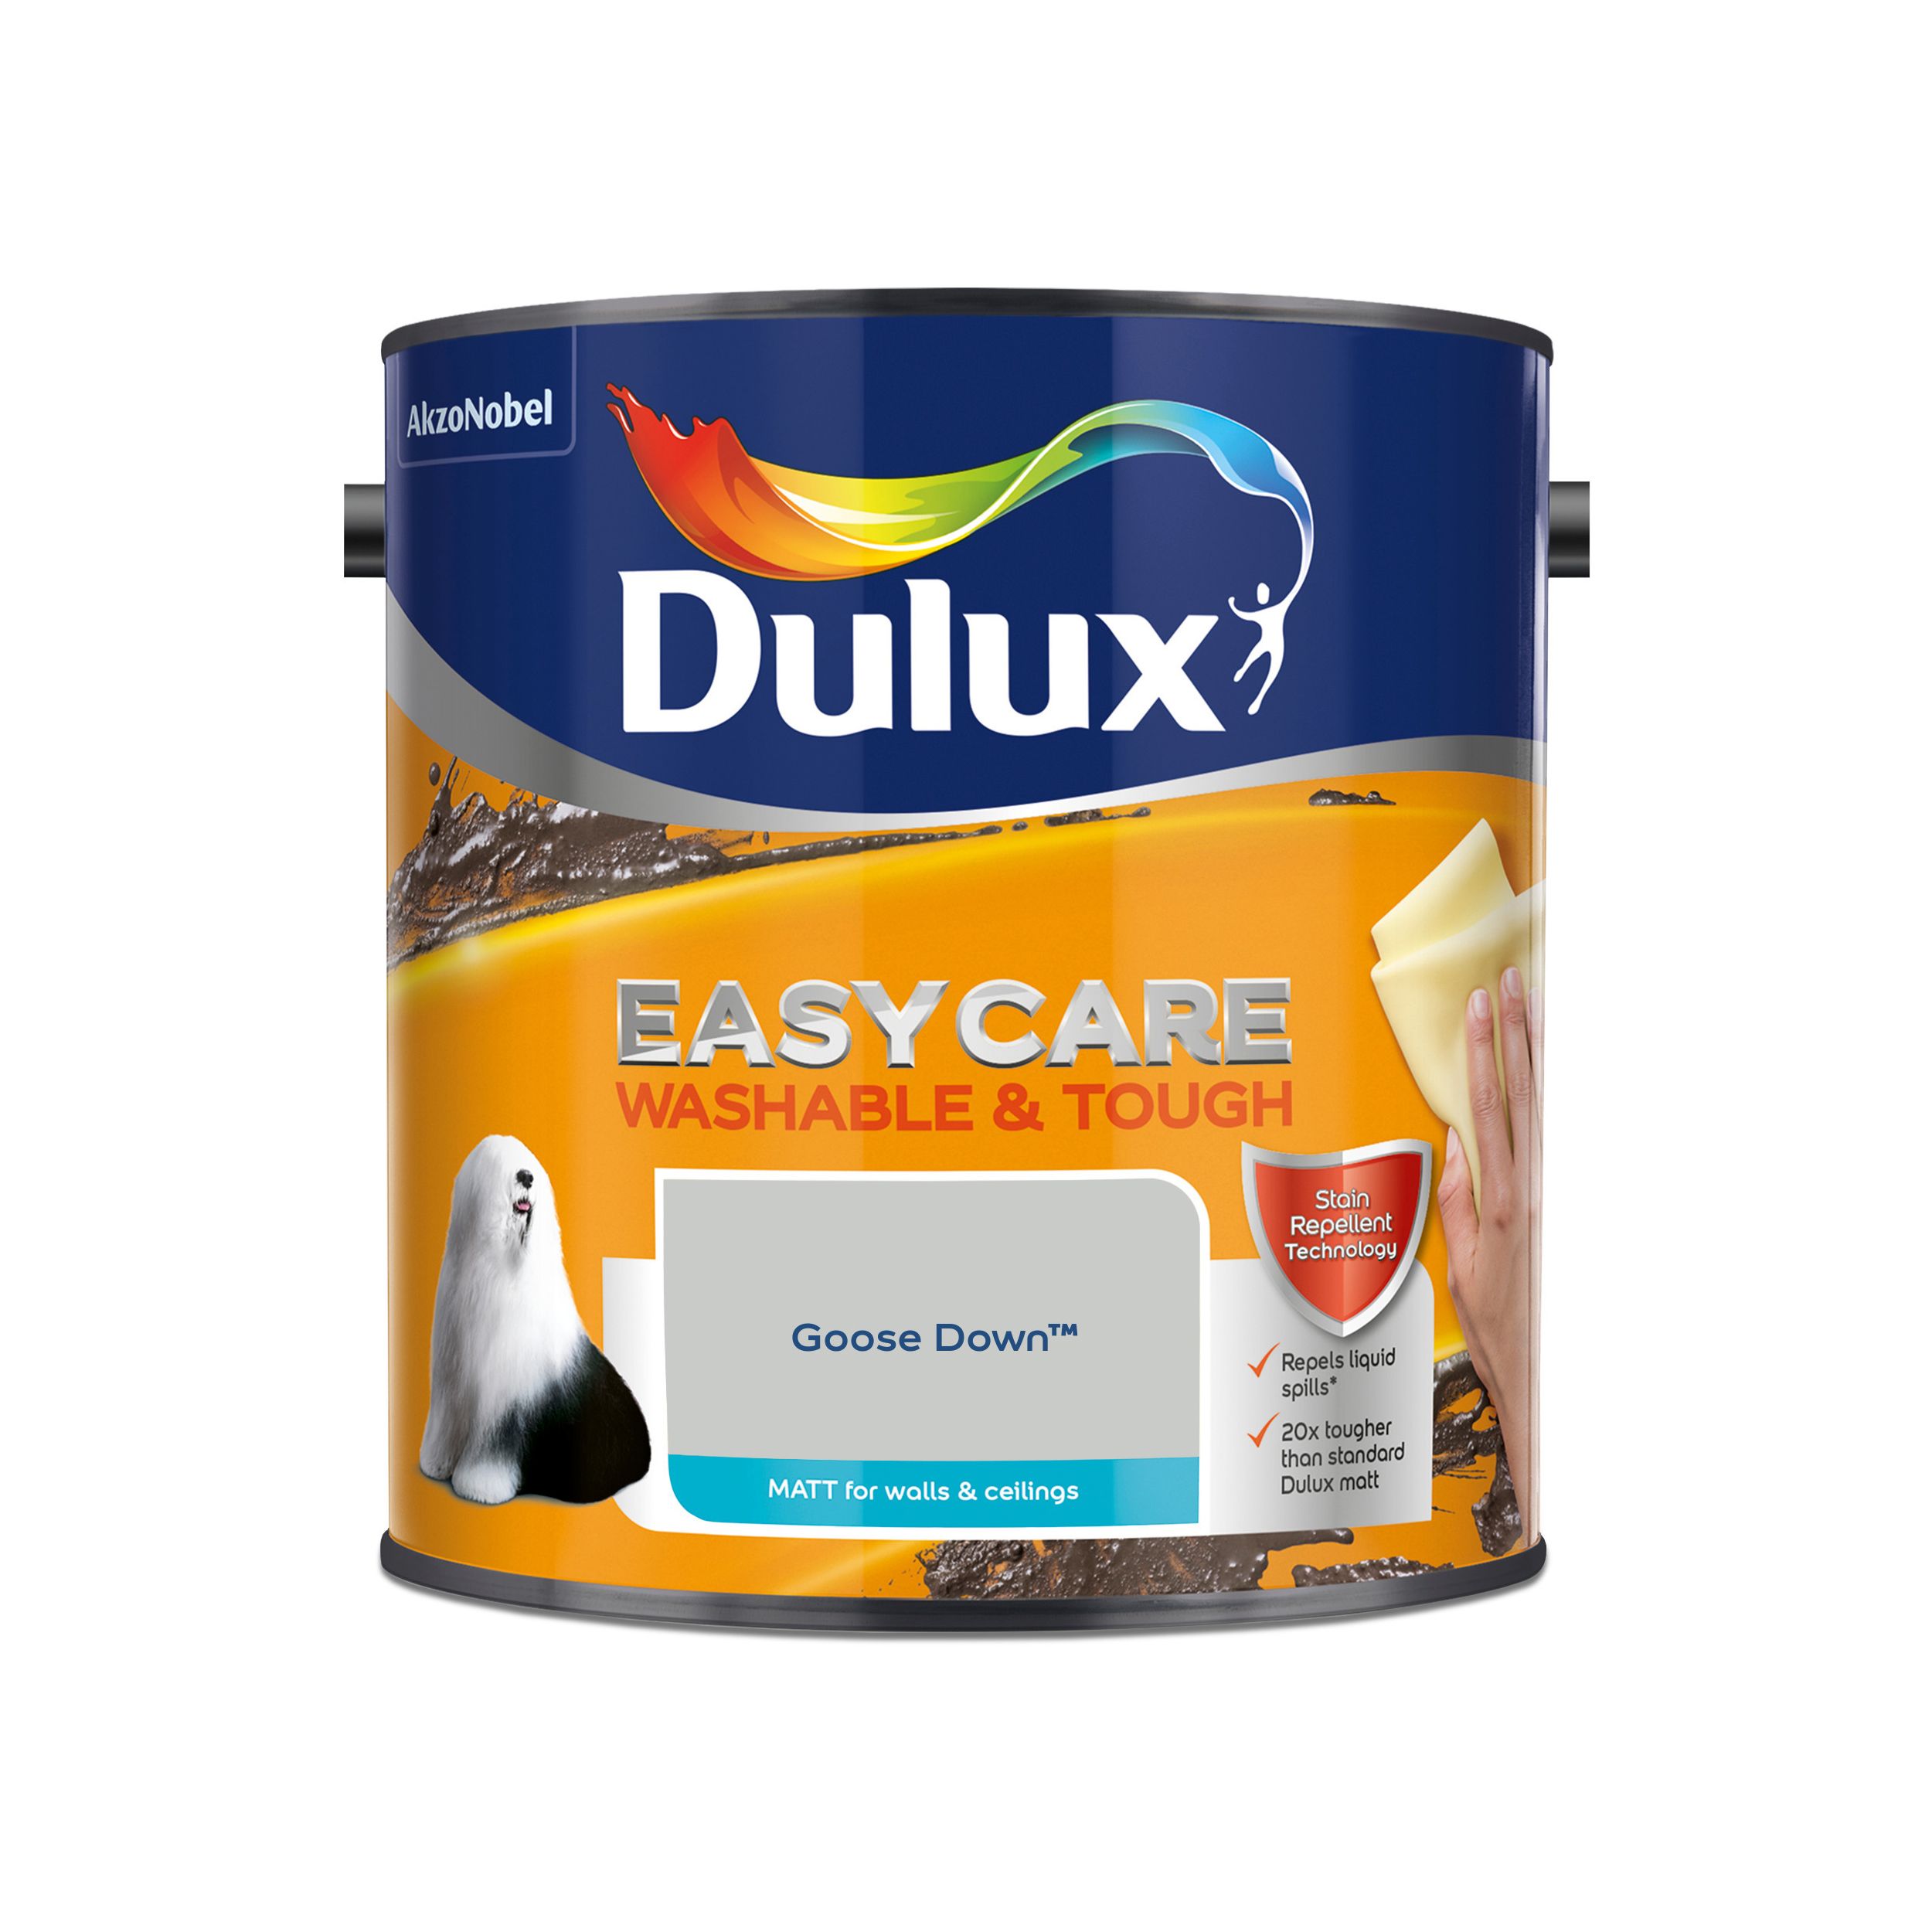 Dulux Easycare Goose down Matt Emulsion paint, 2.5L